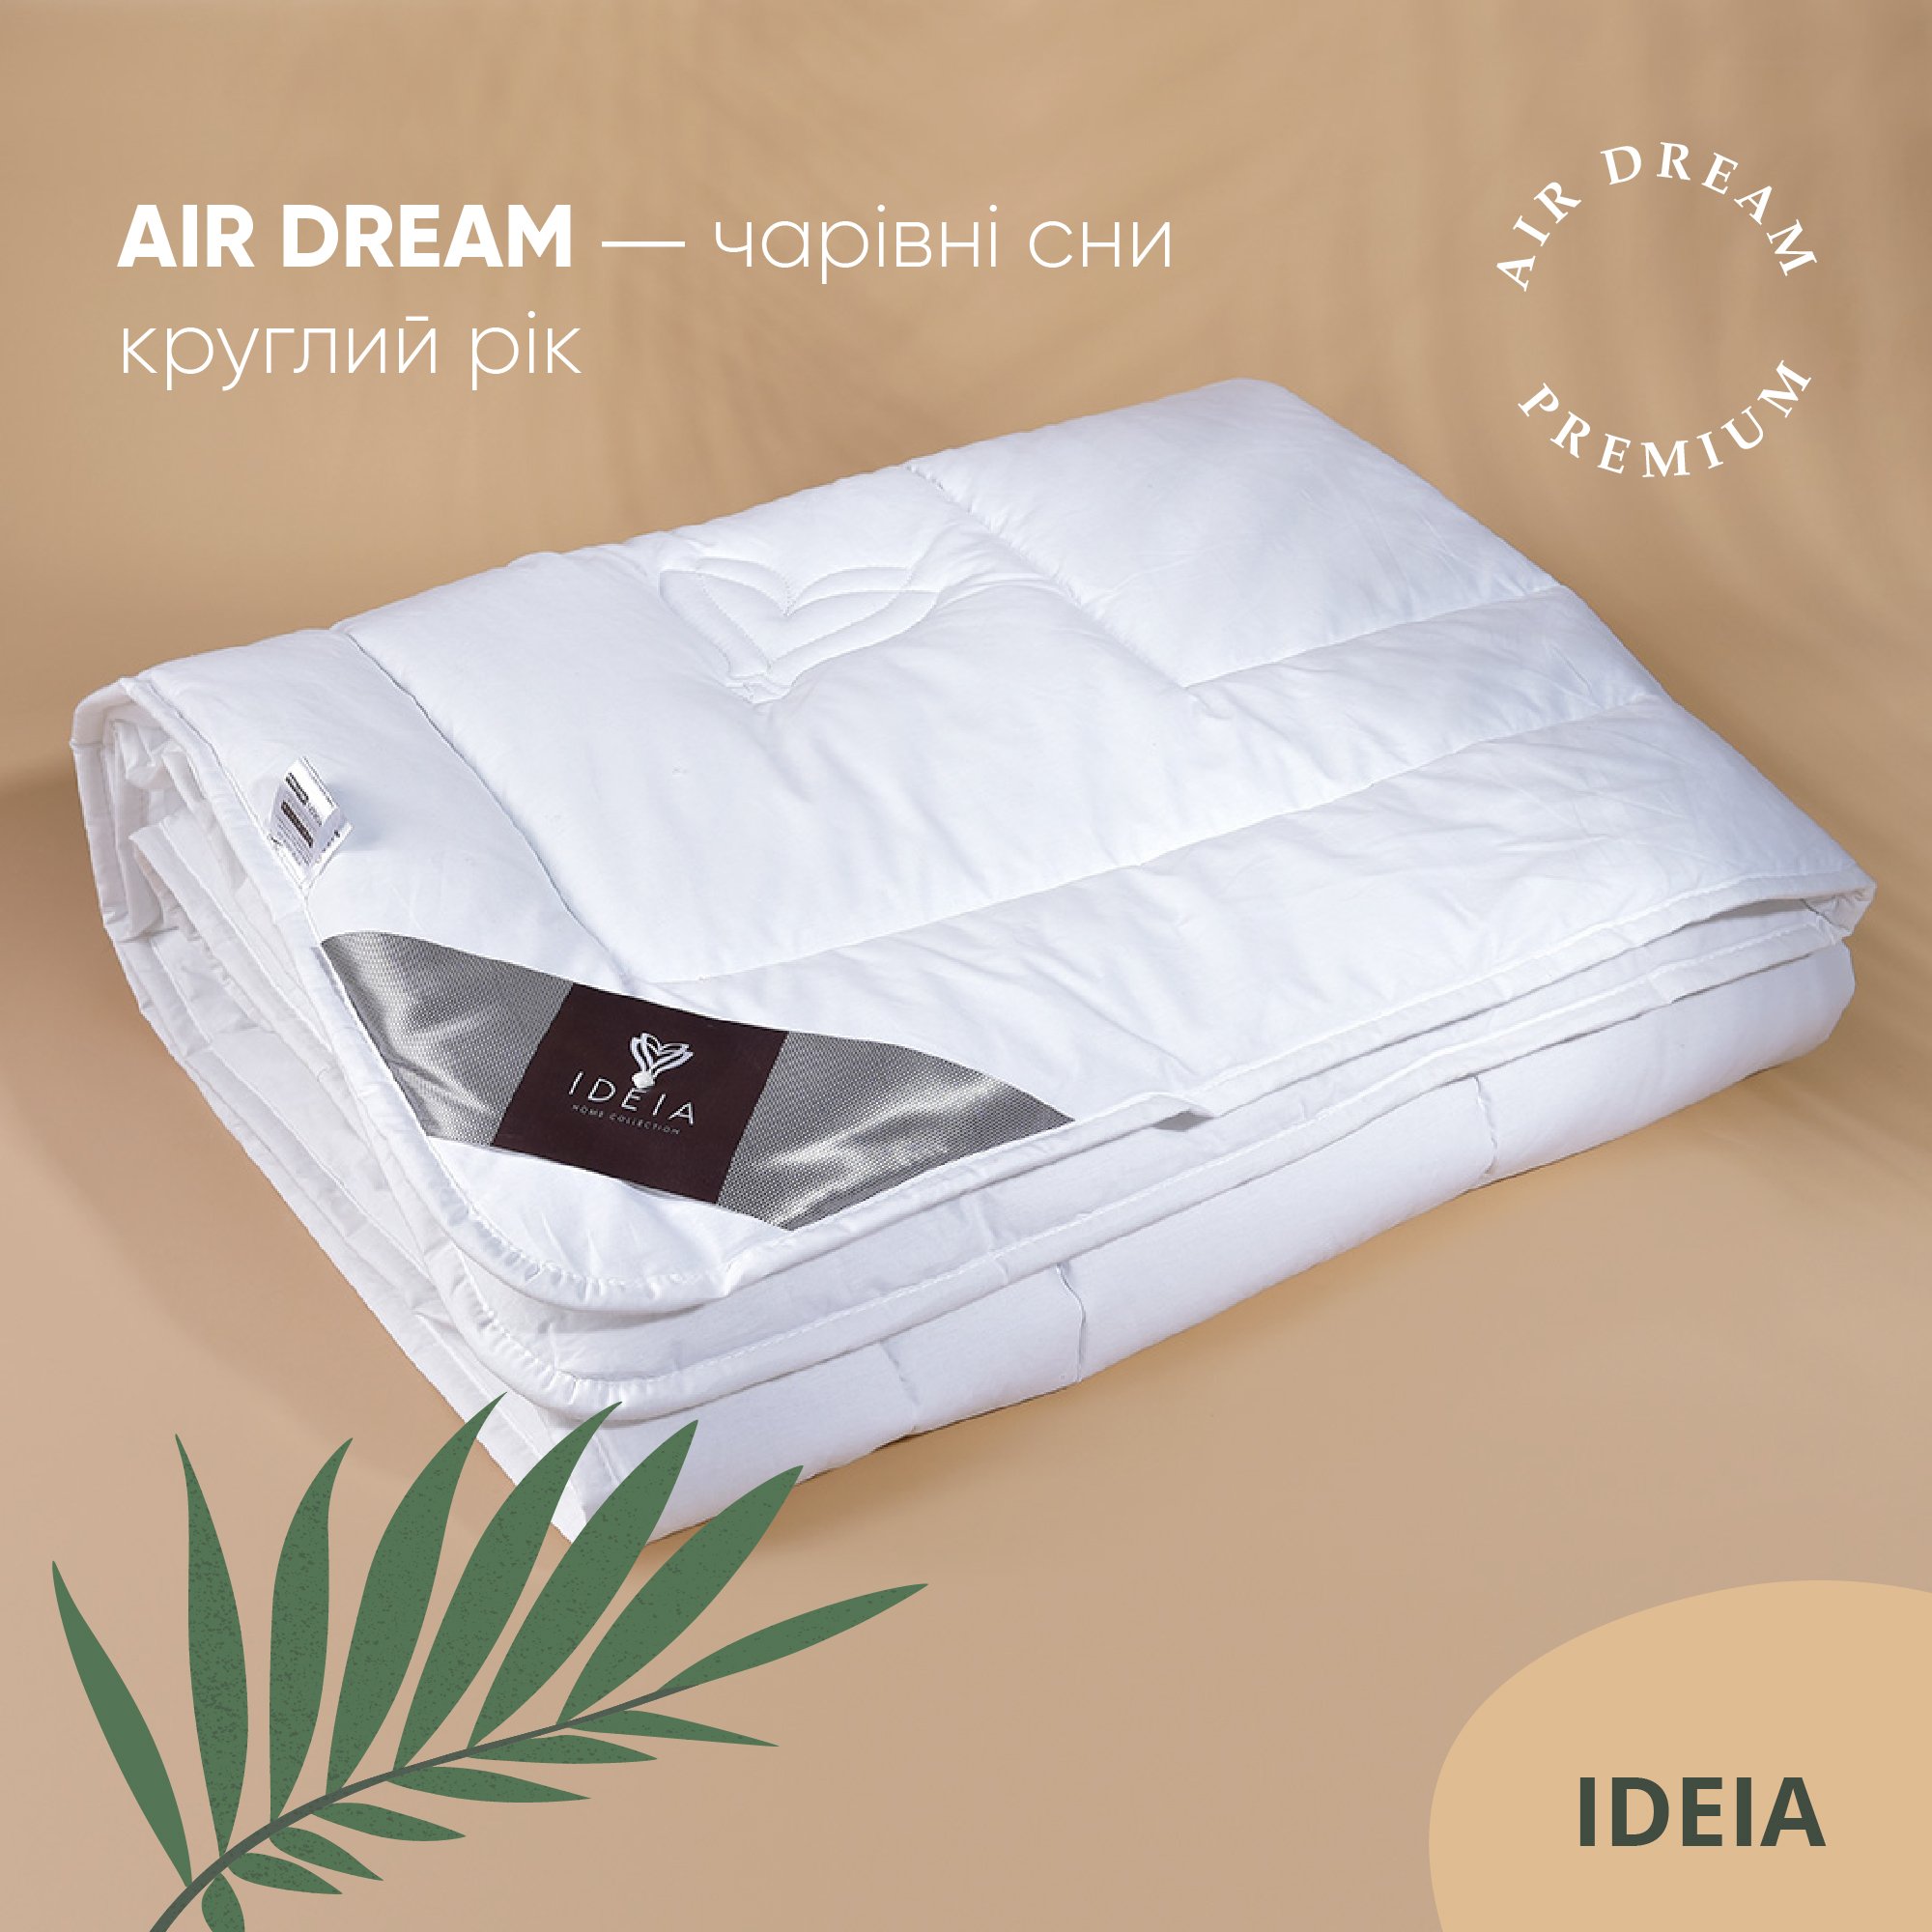 Одеяло Ideia Air Dream Premium летнее, 215х155, белый (8-11696) - фото 3